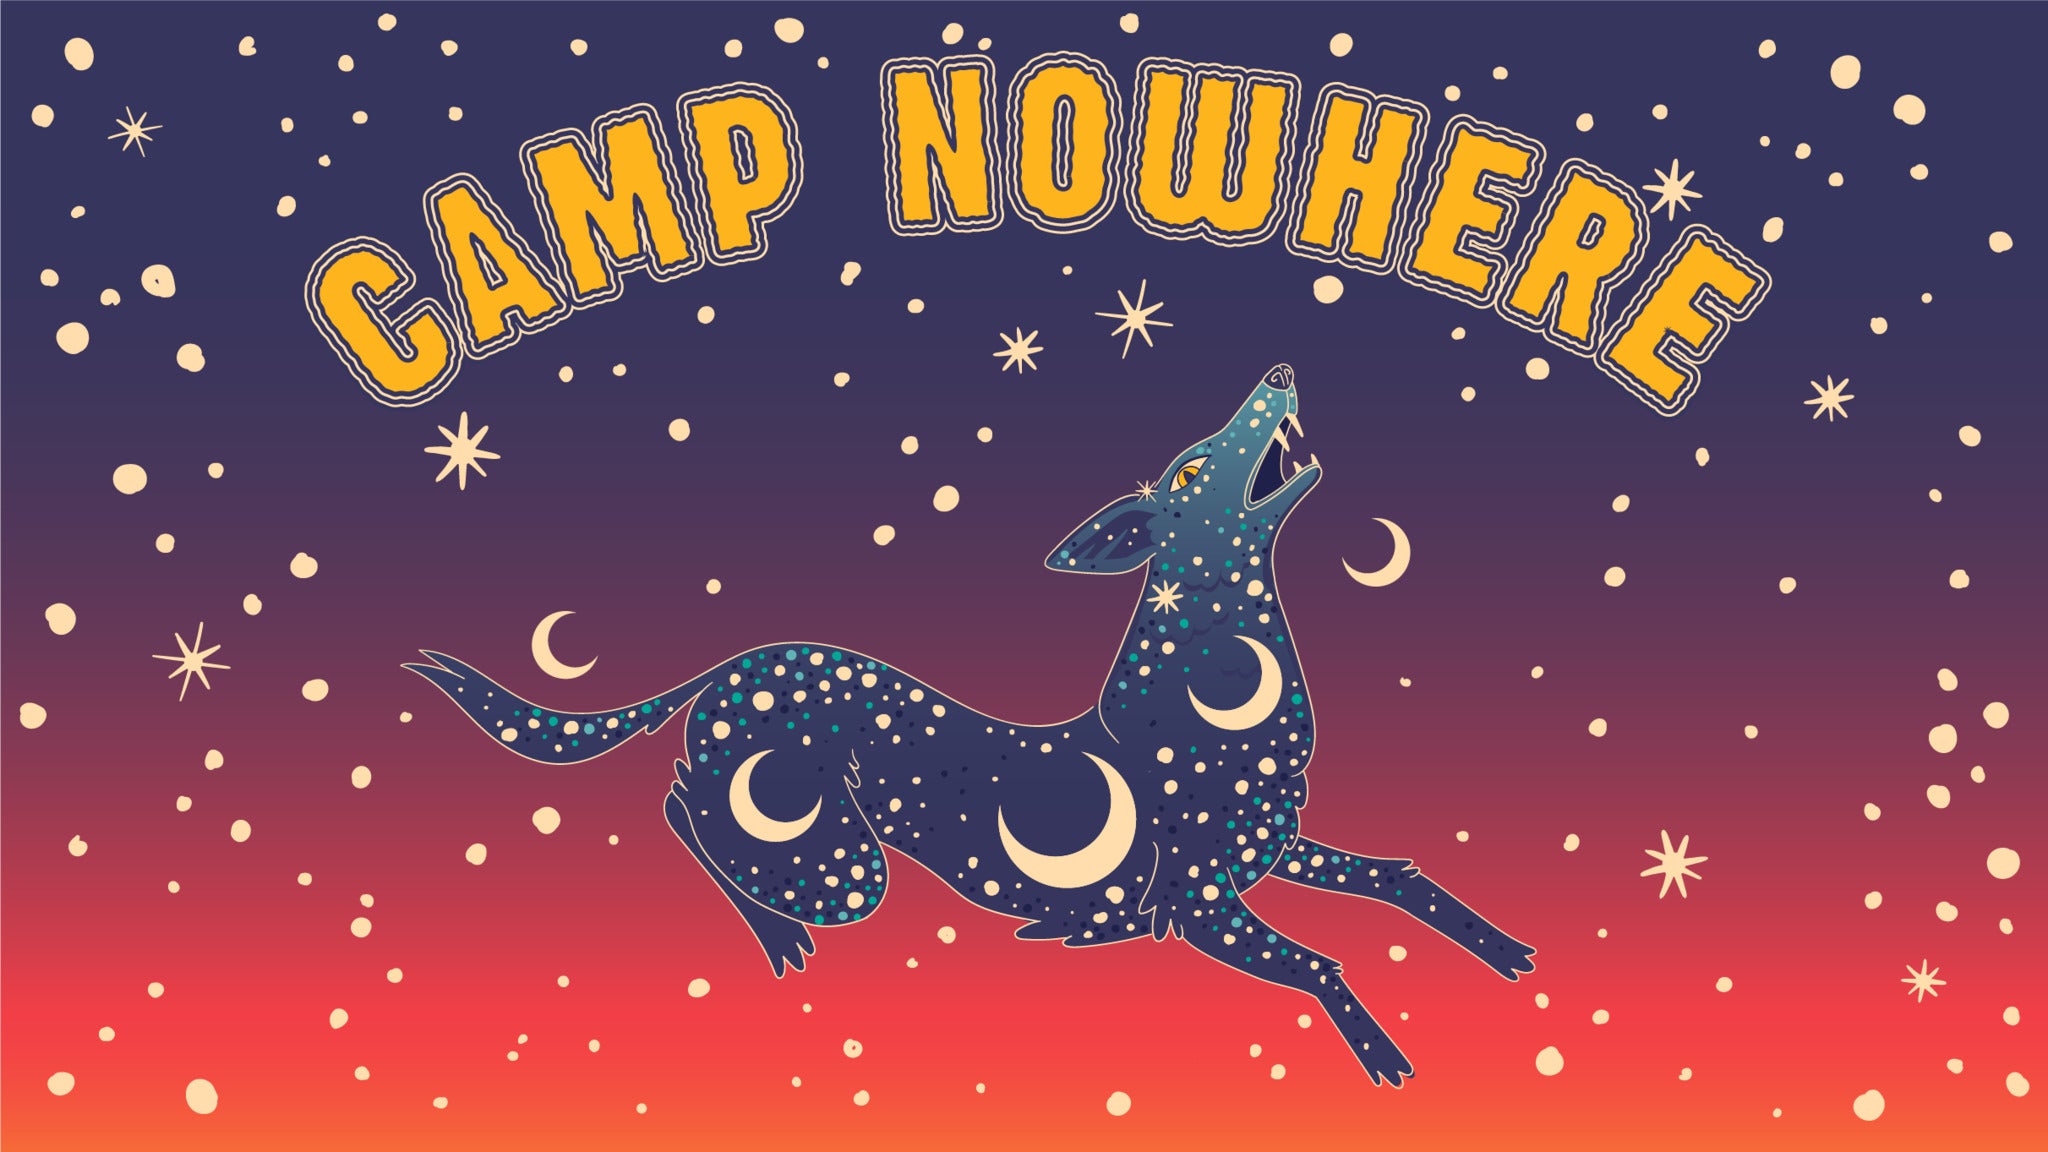 Camp Nowhere 2022: Porter Robinson, Lane 8, Nora En Pure, Fletcher & M in Dallas promo photo for Artist presale offer code